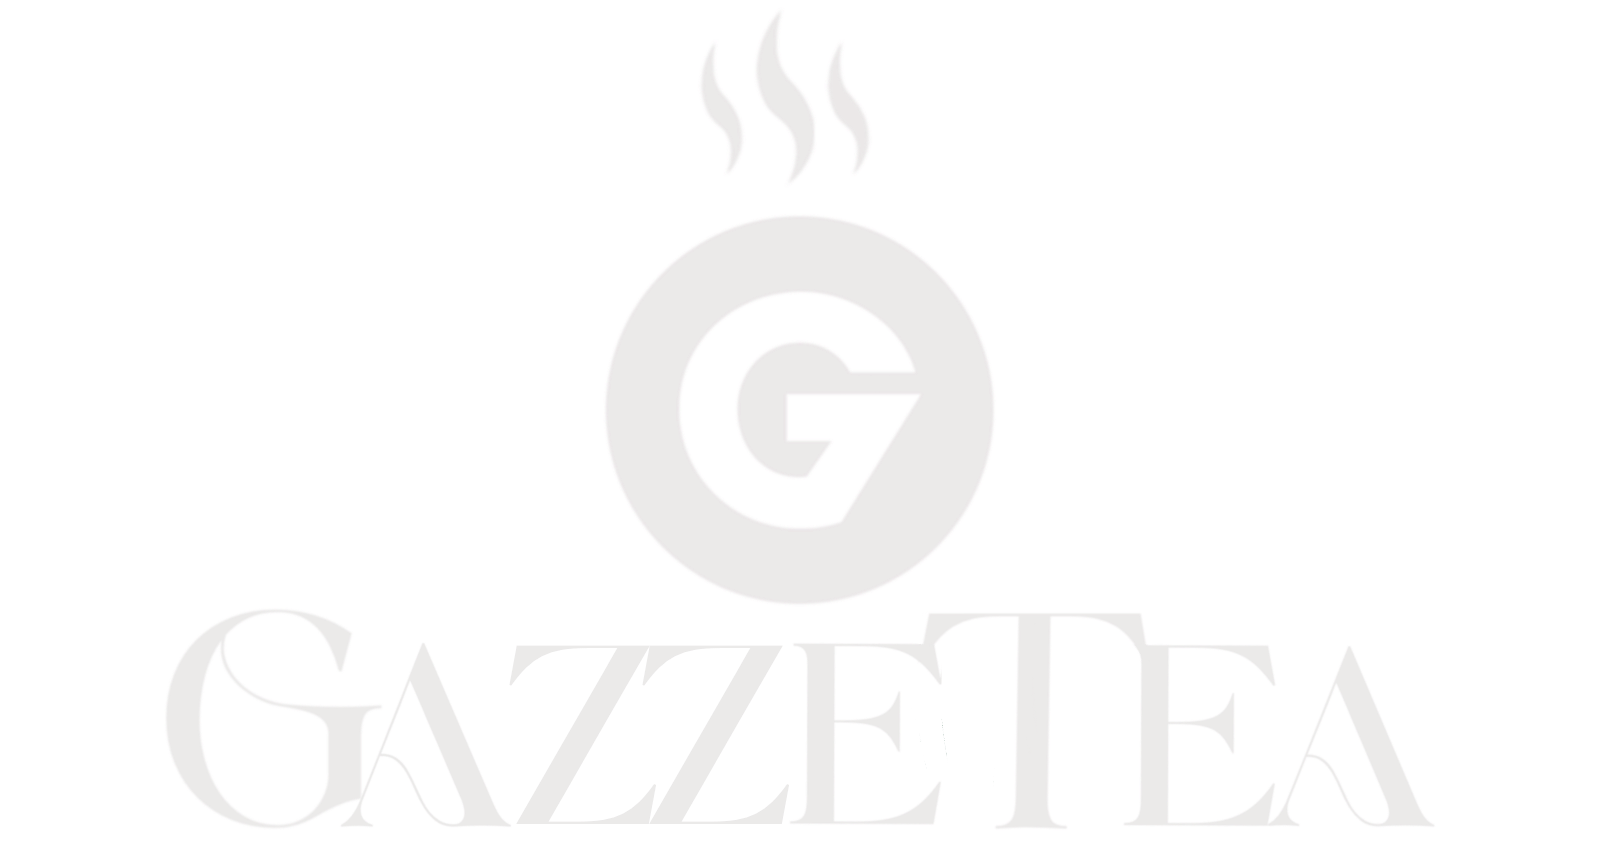 Gazzetea